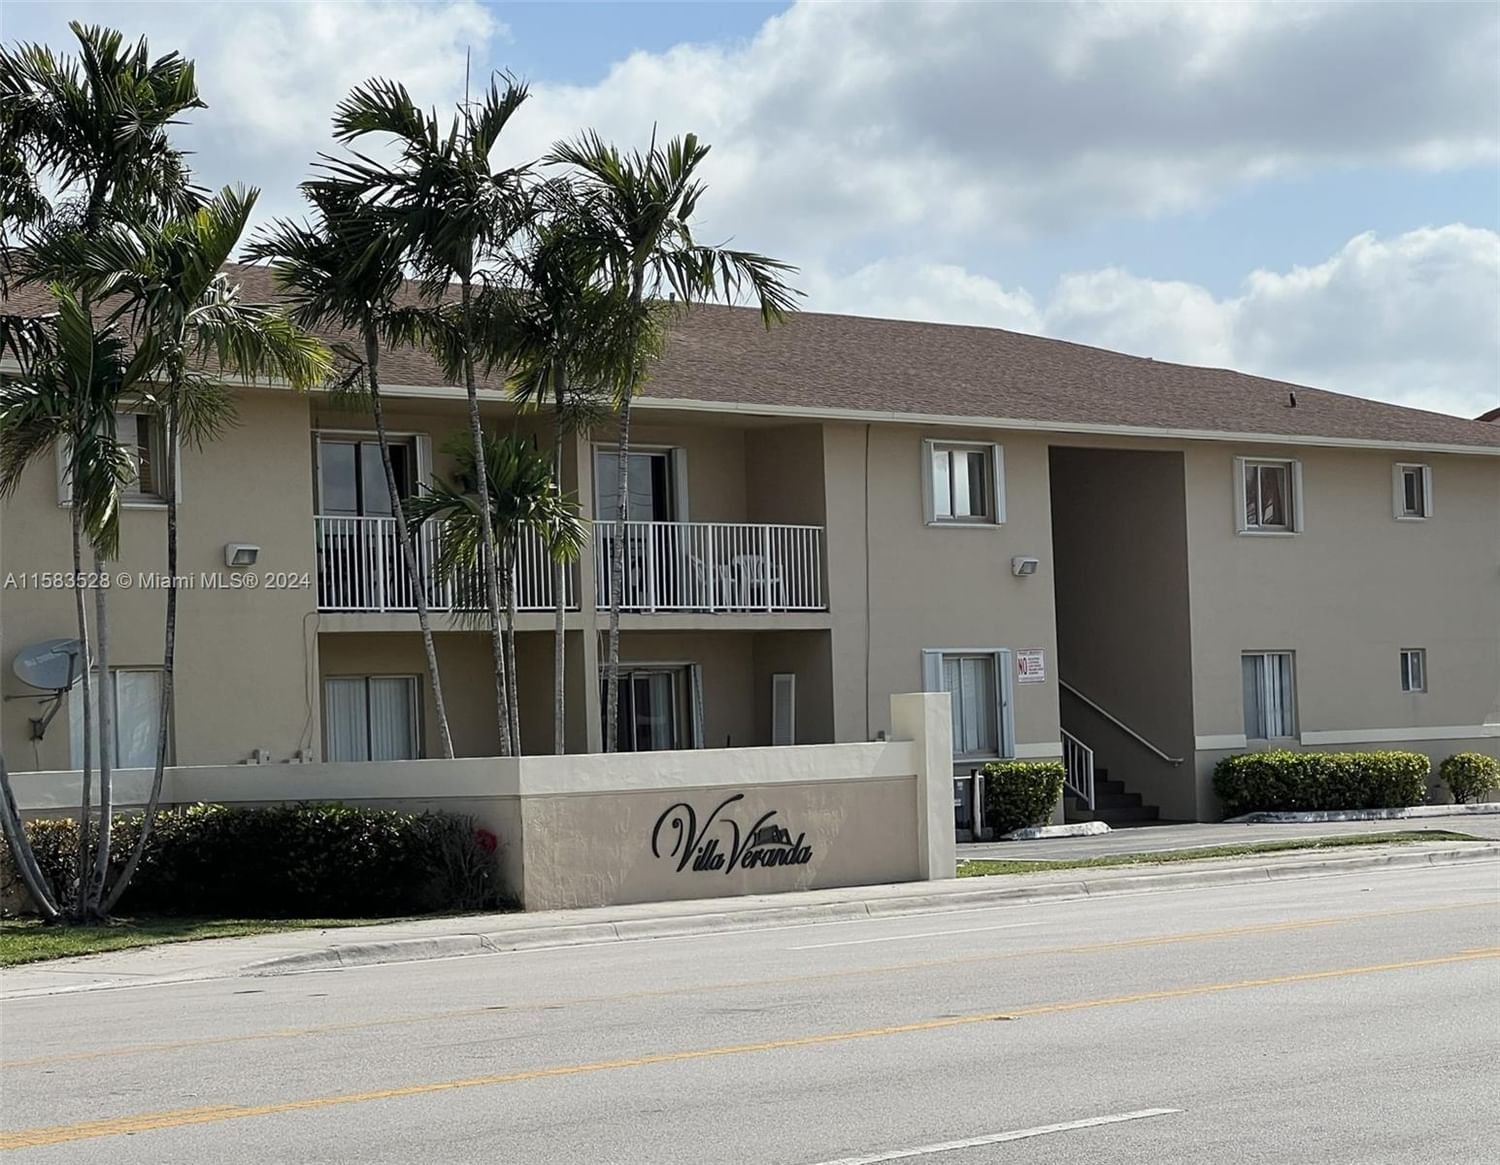 Real estate property located at 3051 76th St D-212, Miami-Dade County, VILLA VERANDA CONDO, Hialeah, FL